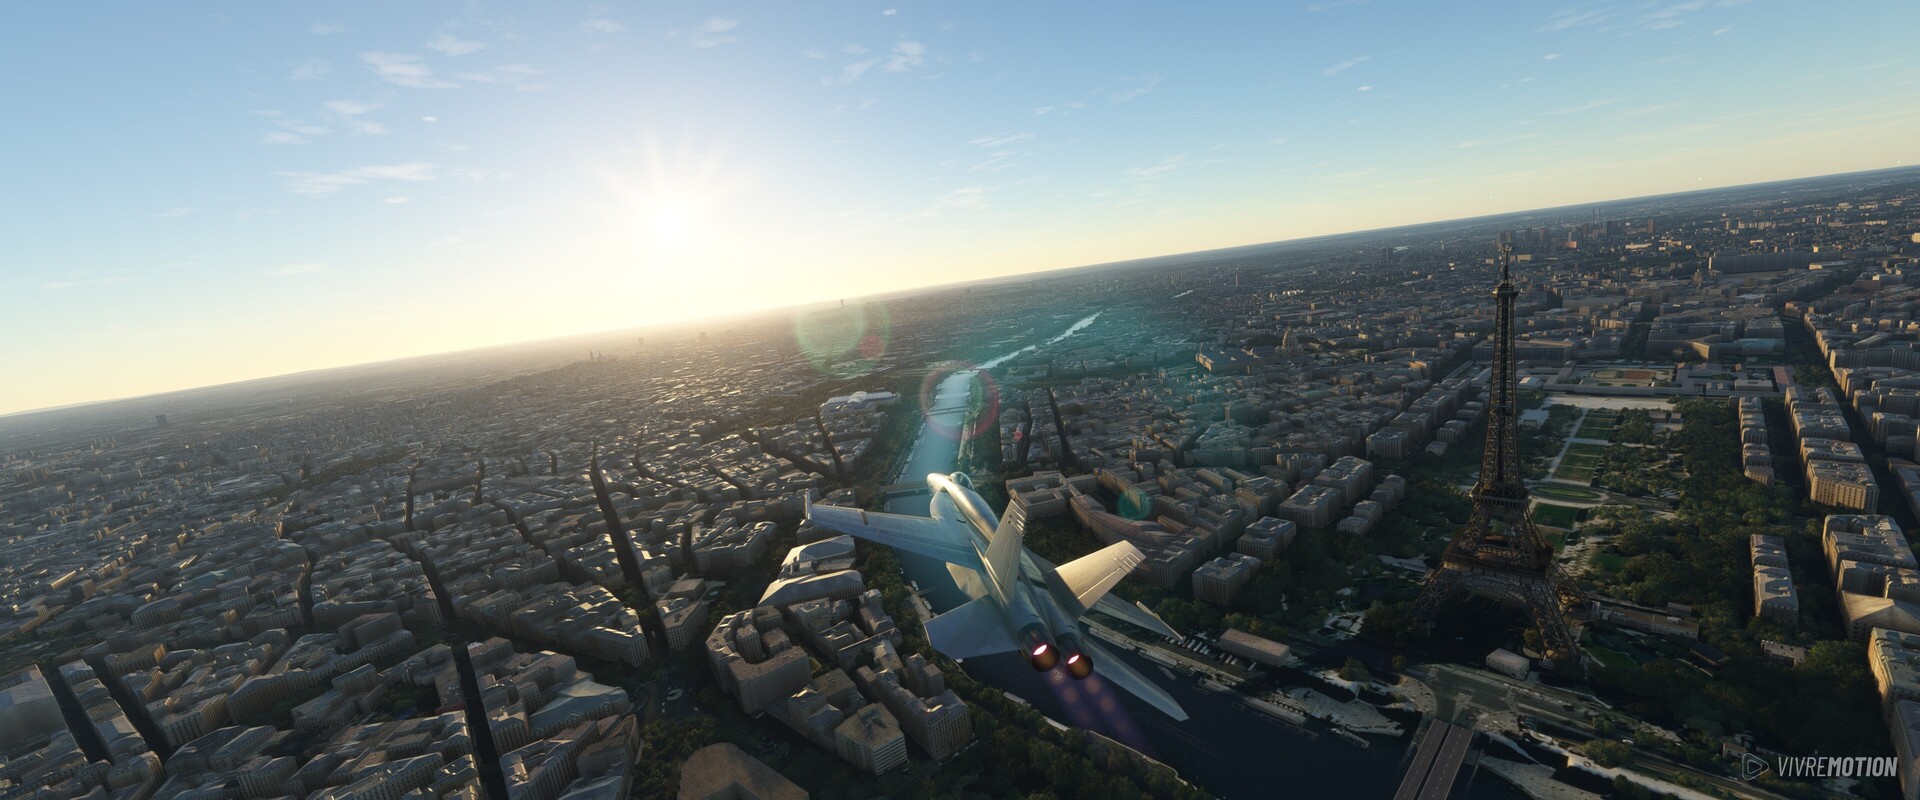 Paris Eiffelturm - Boeing F/A-18 Super Hornet - Microsoft Flight Simulator - VIVRE-MOTION